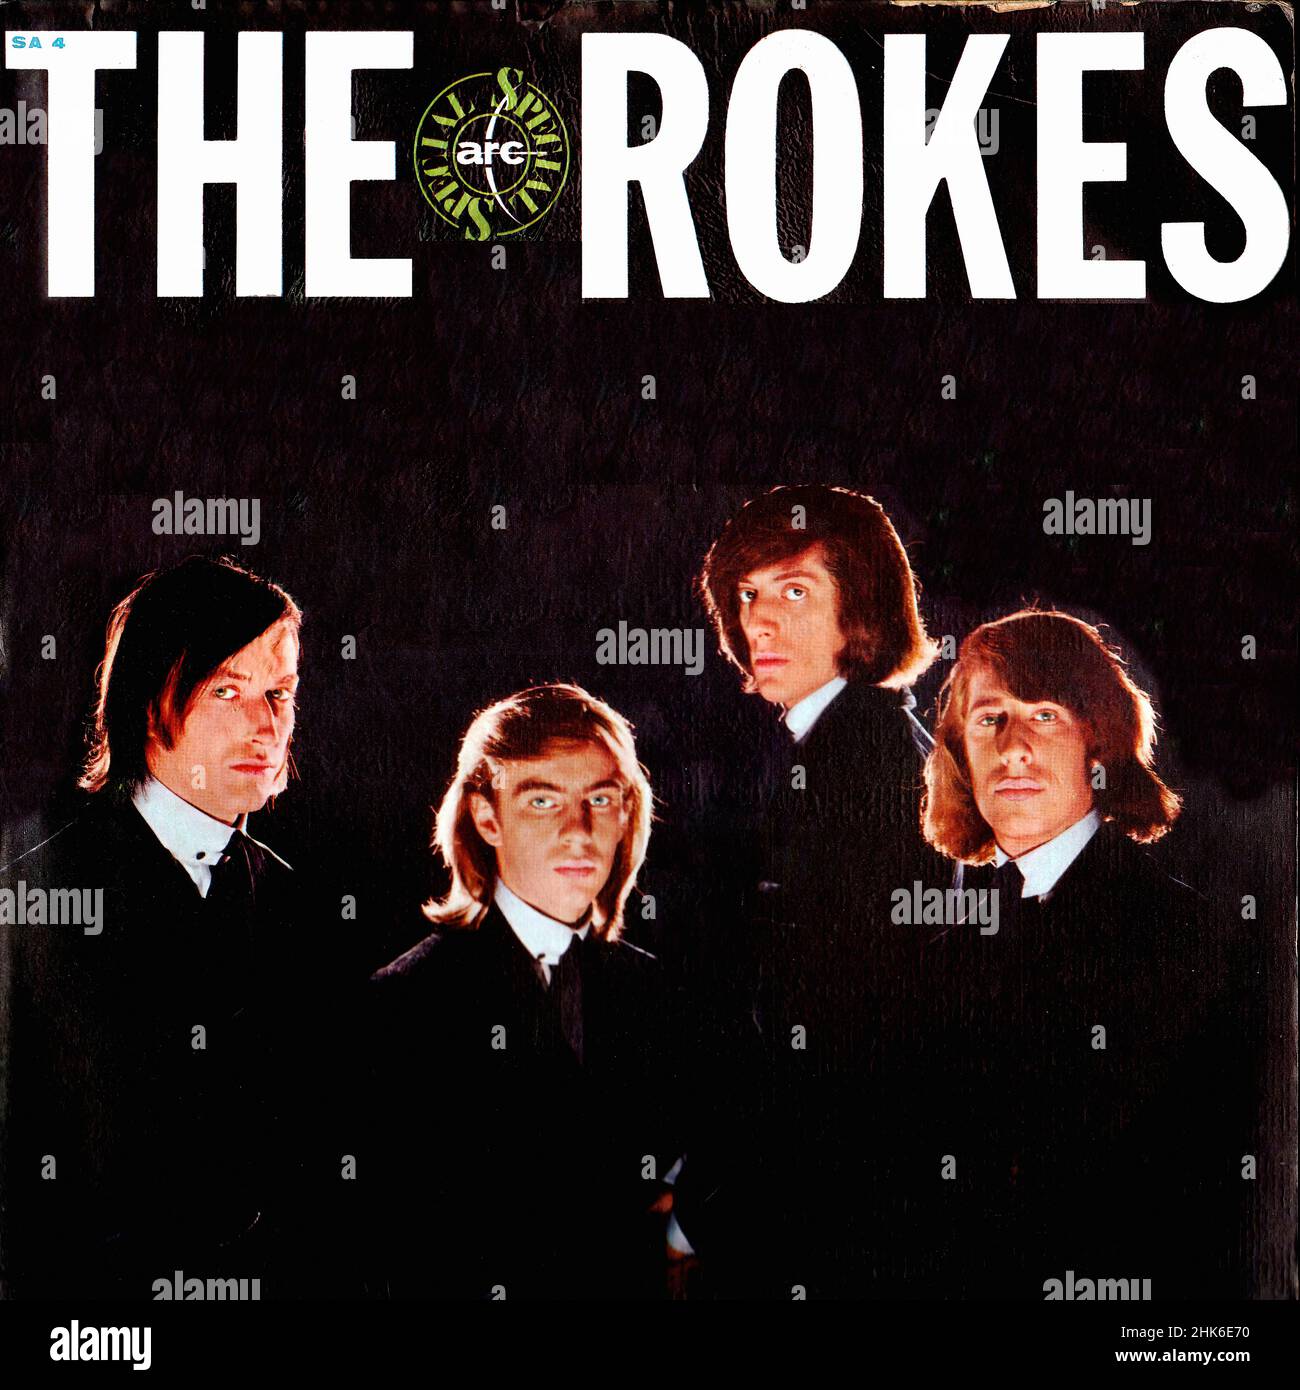 Vintage vinilo discográfico - Rokes, el - Same - Italia - 1965 Foto de stock